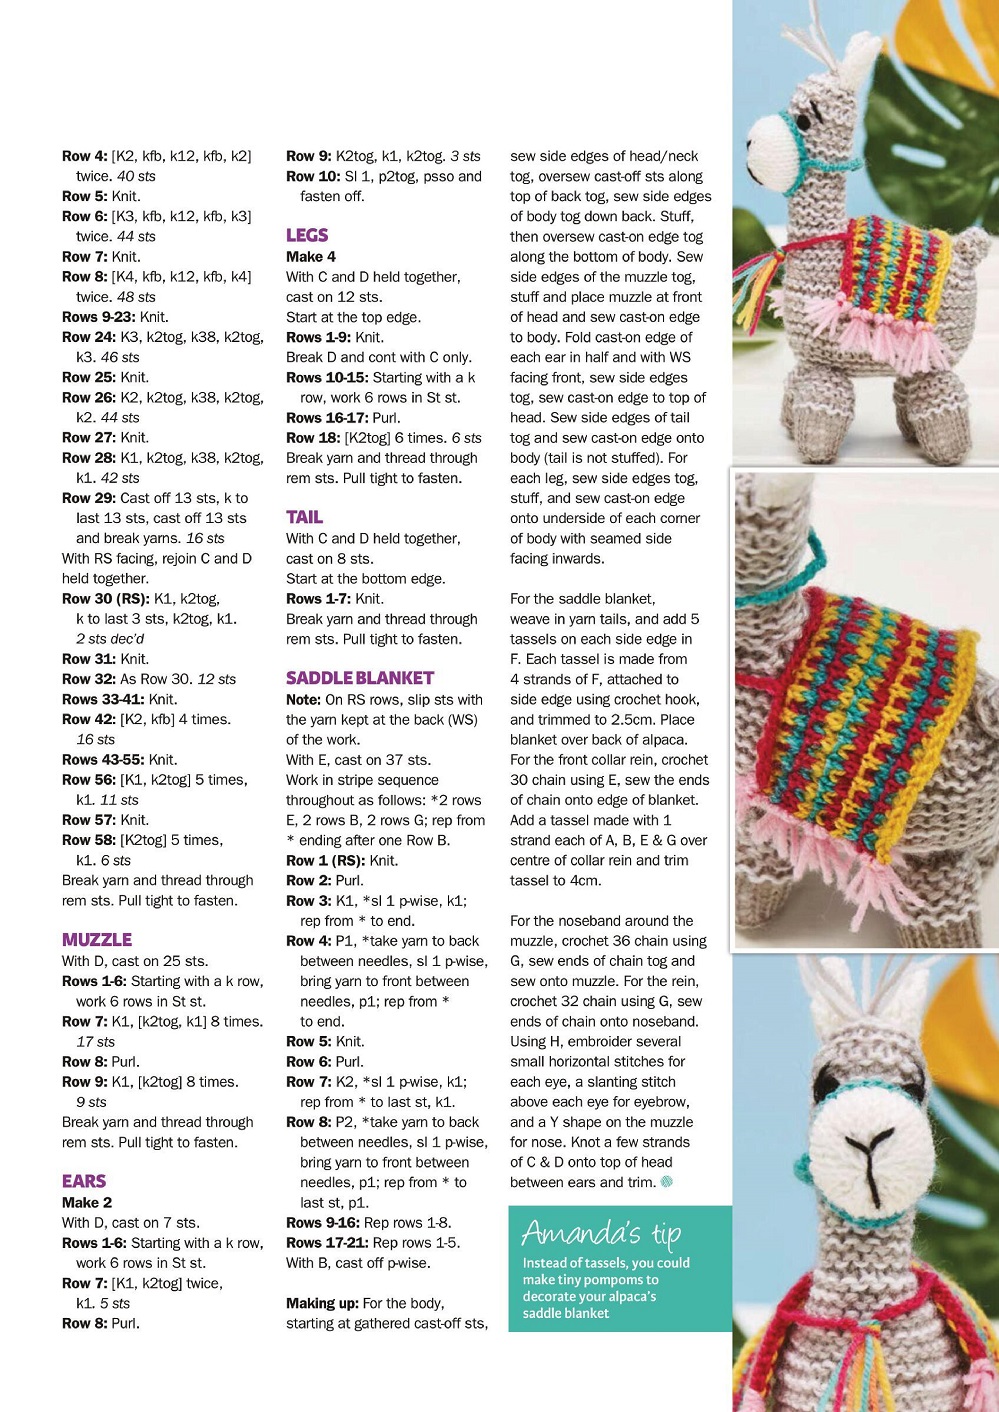 Альпака крючком - описание вязания игрушки (4)